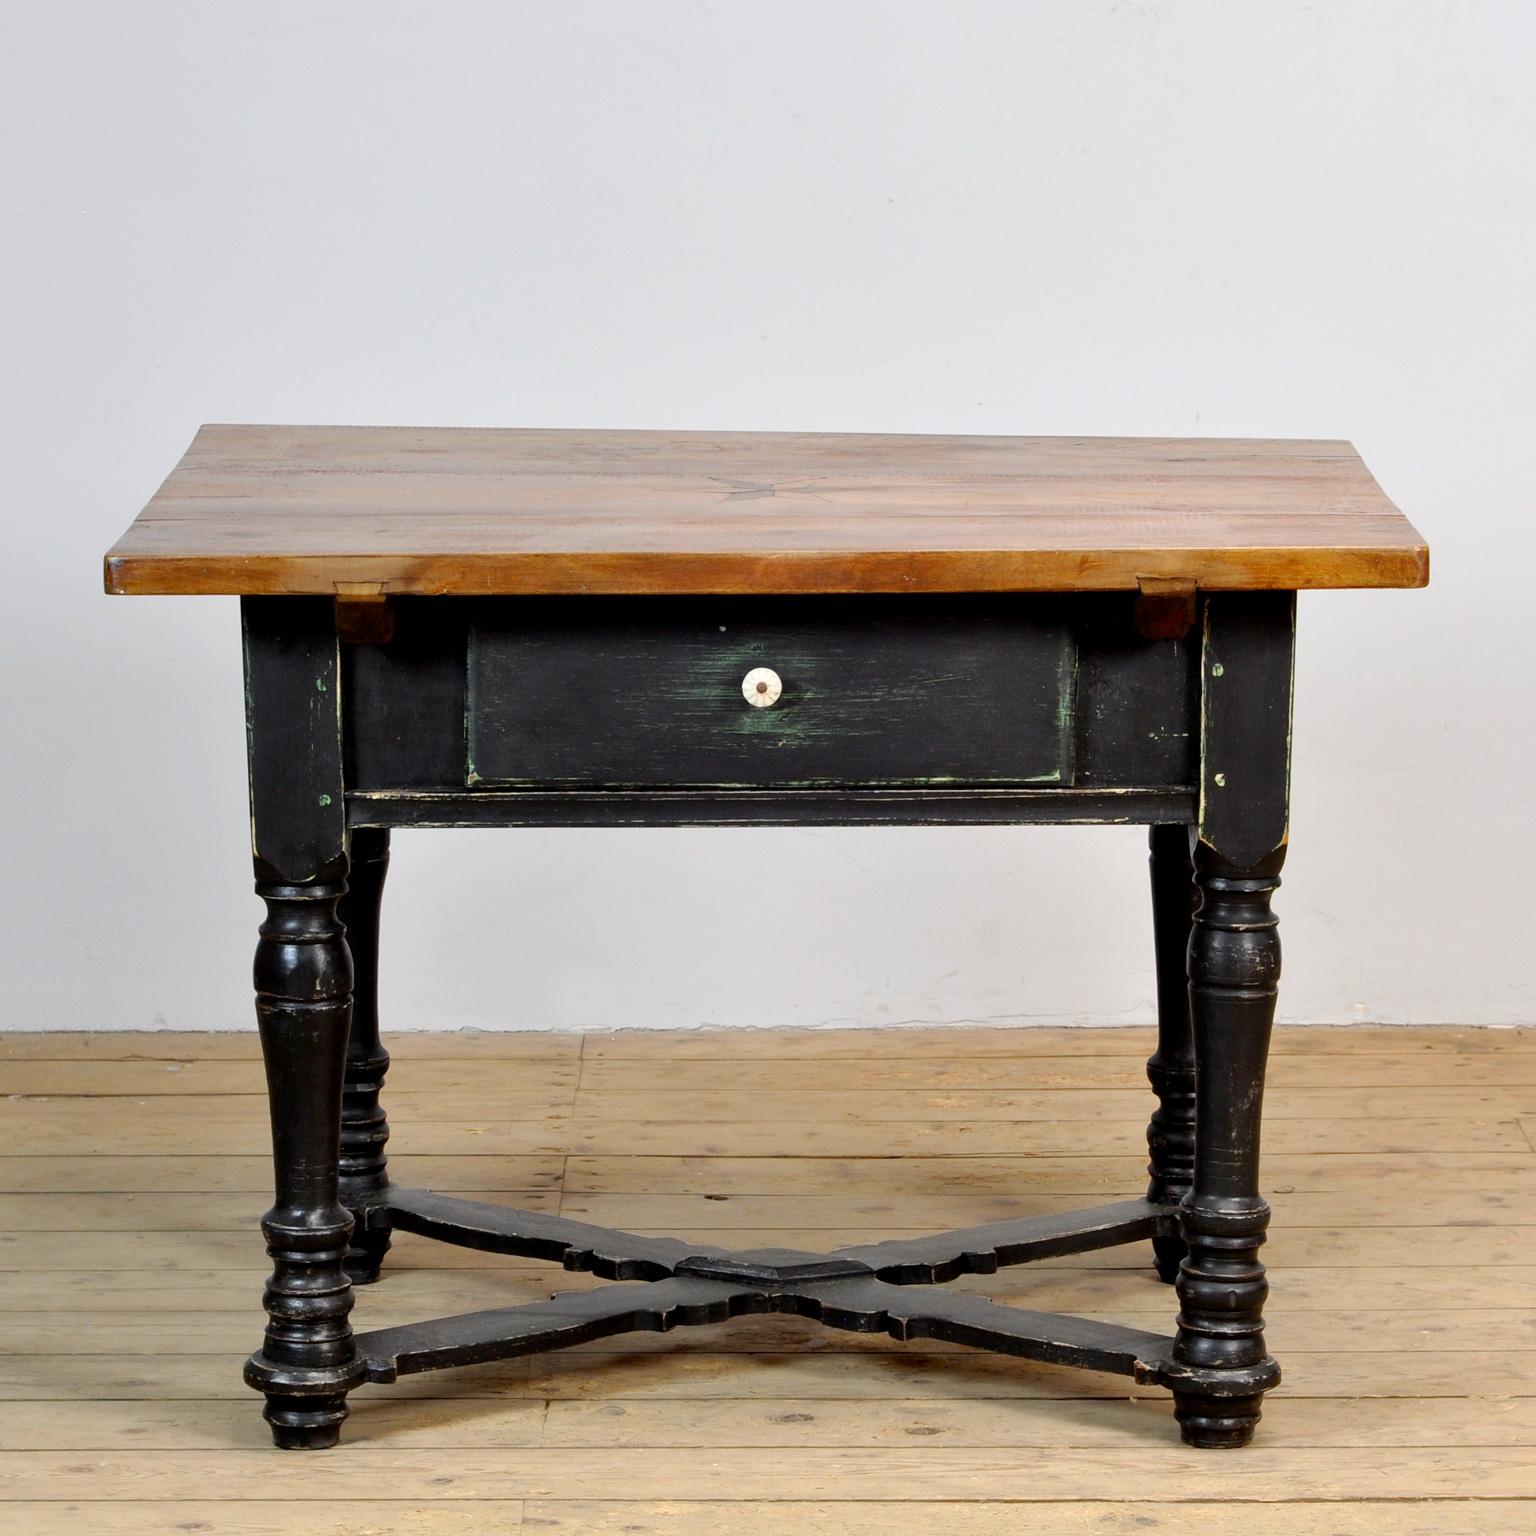 Tisch aus den 1920er Jahren mit einer Schublade. Der Tisch ist aus Kiefernholz mit einer Platte aus Eichenholz gefertigt. Die Oberseite ist mit einer Sternintarsie versehen.